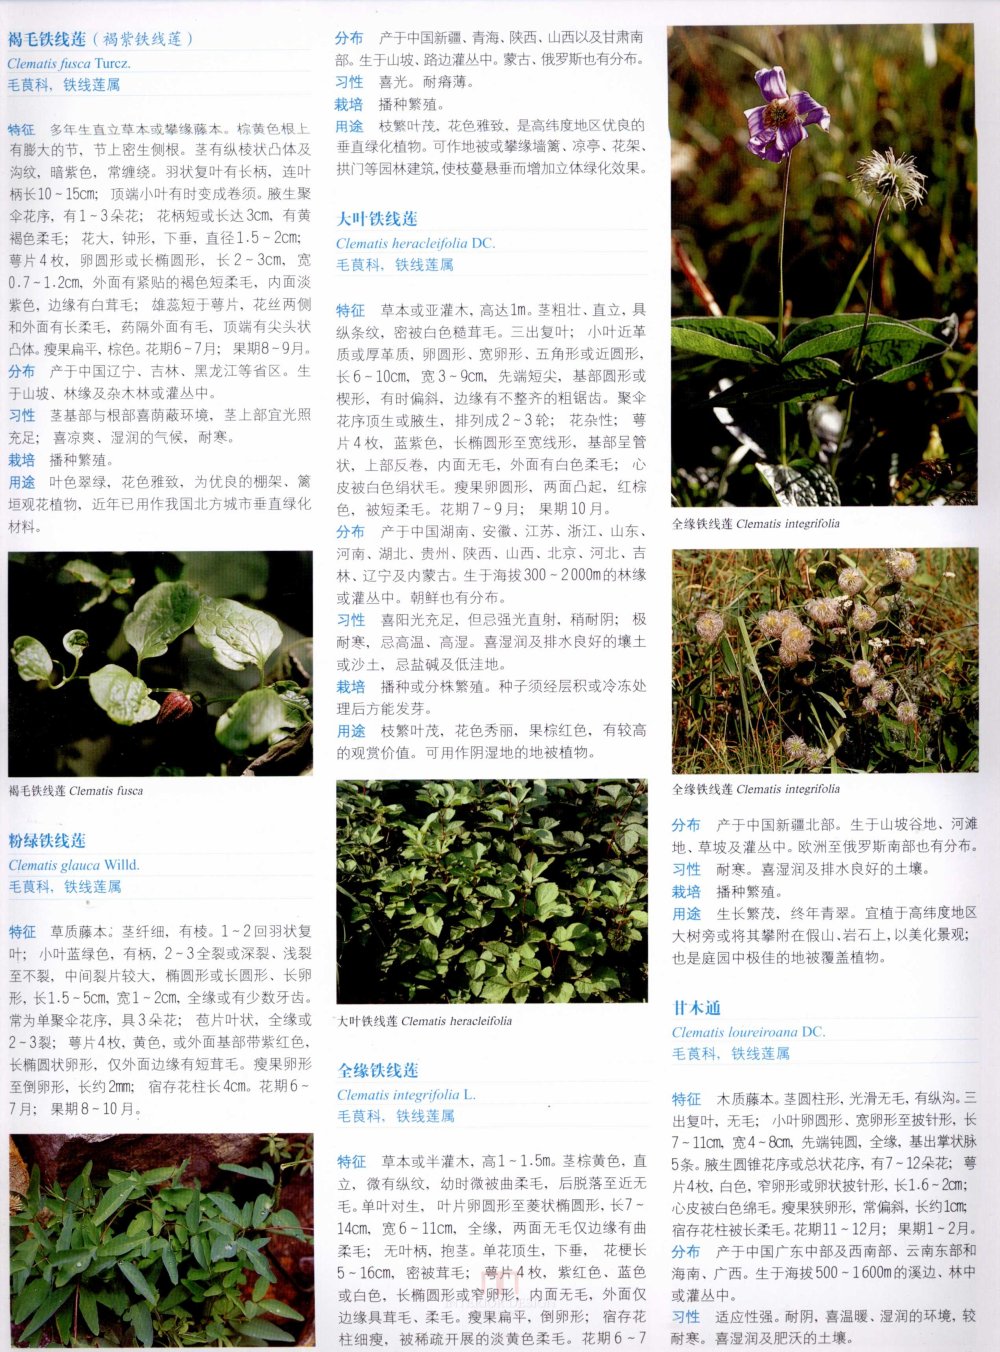 中国景观植物上(上)--H_0241.jpg